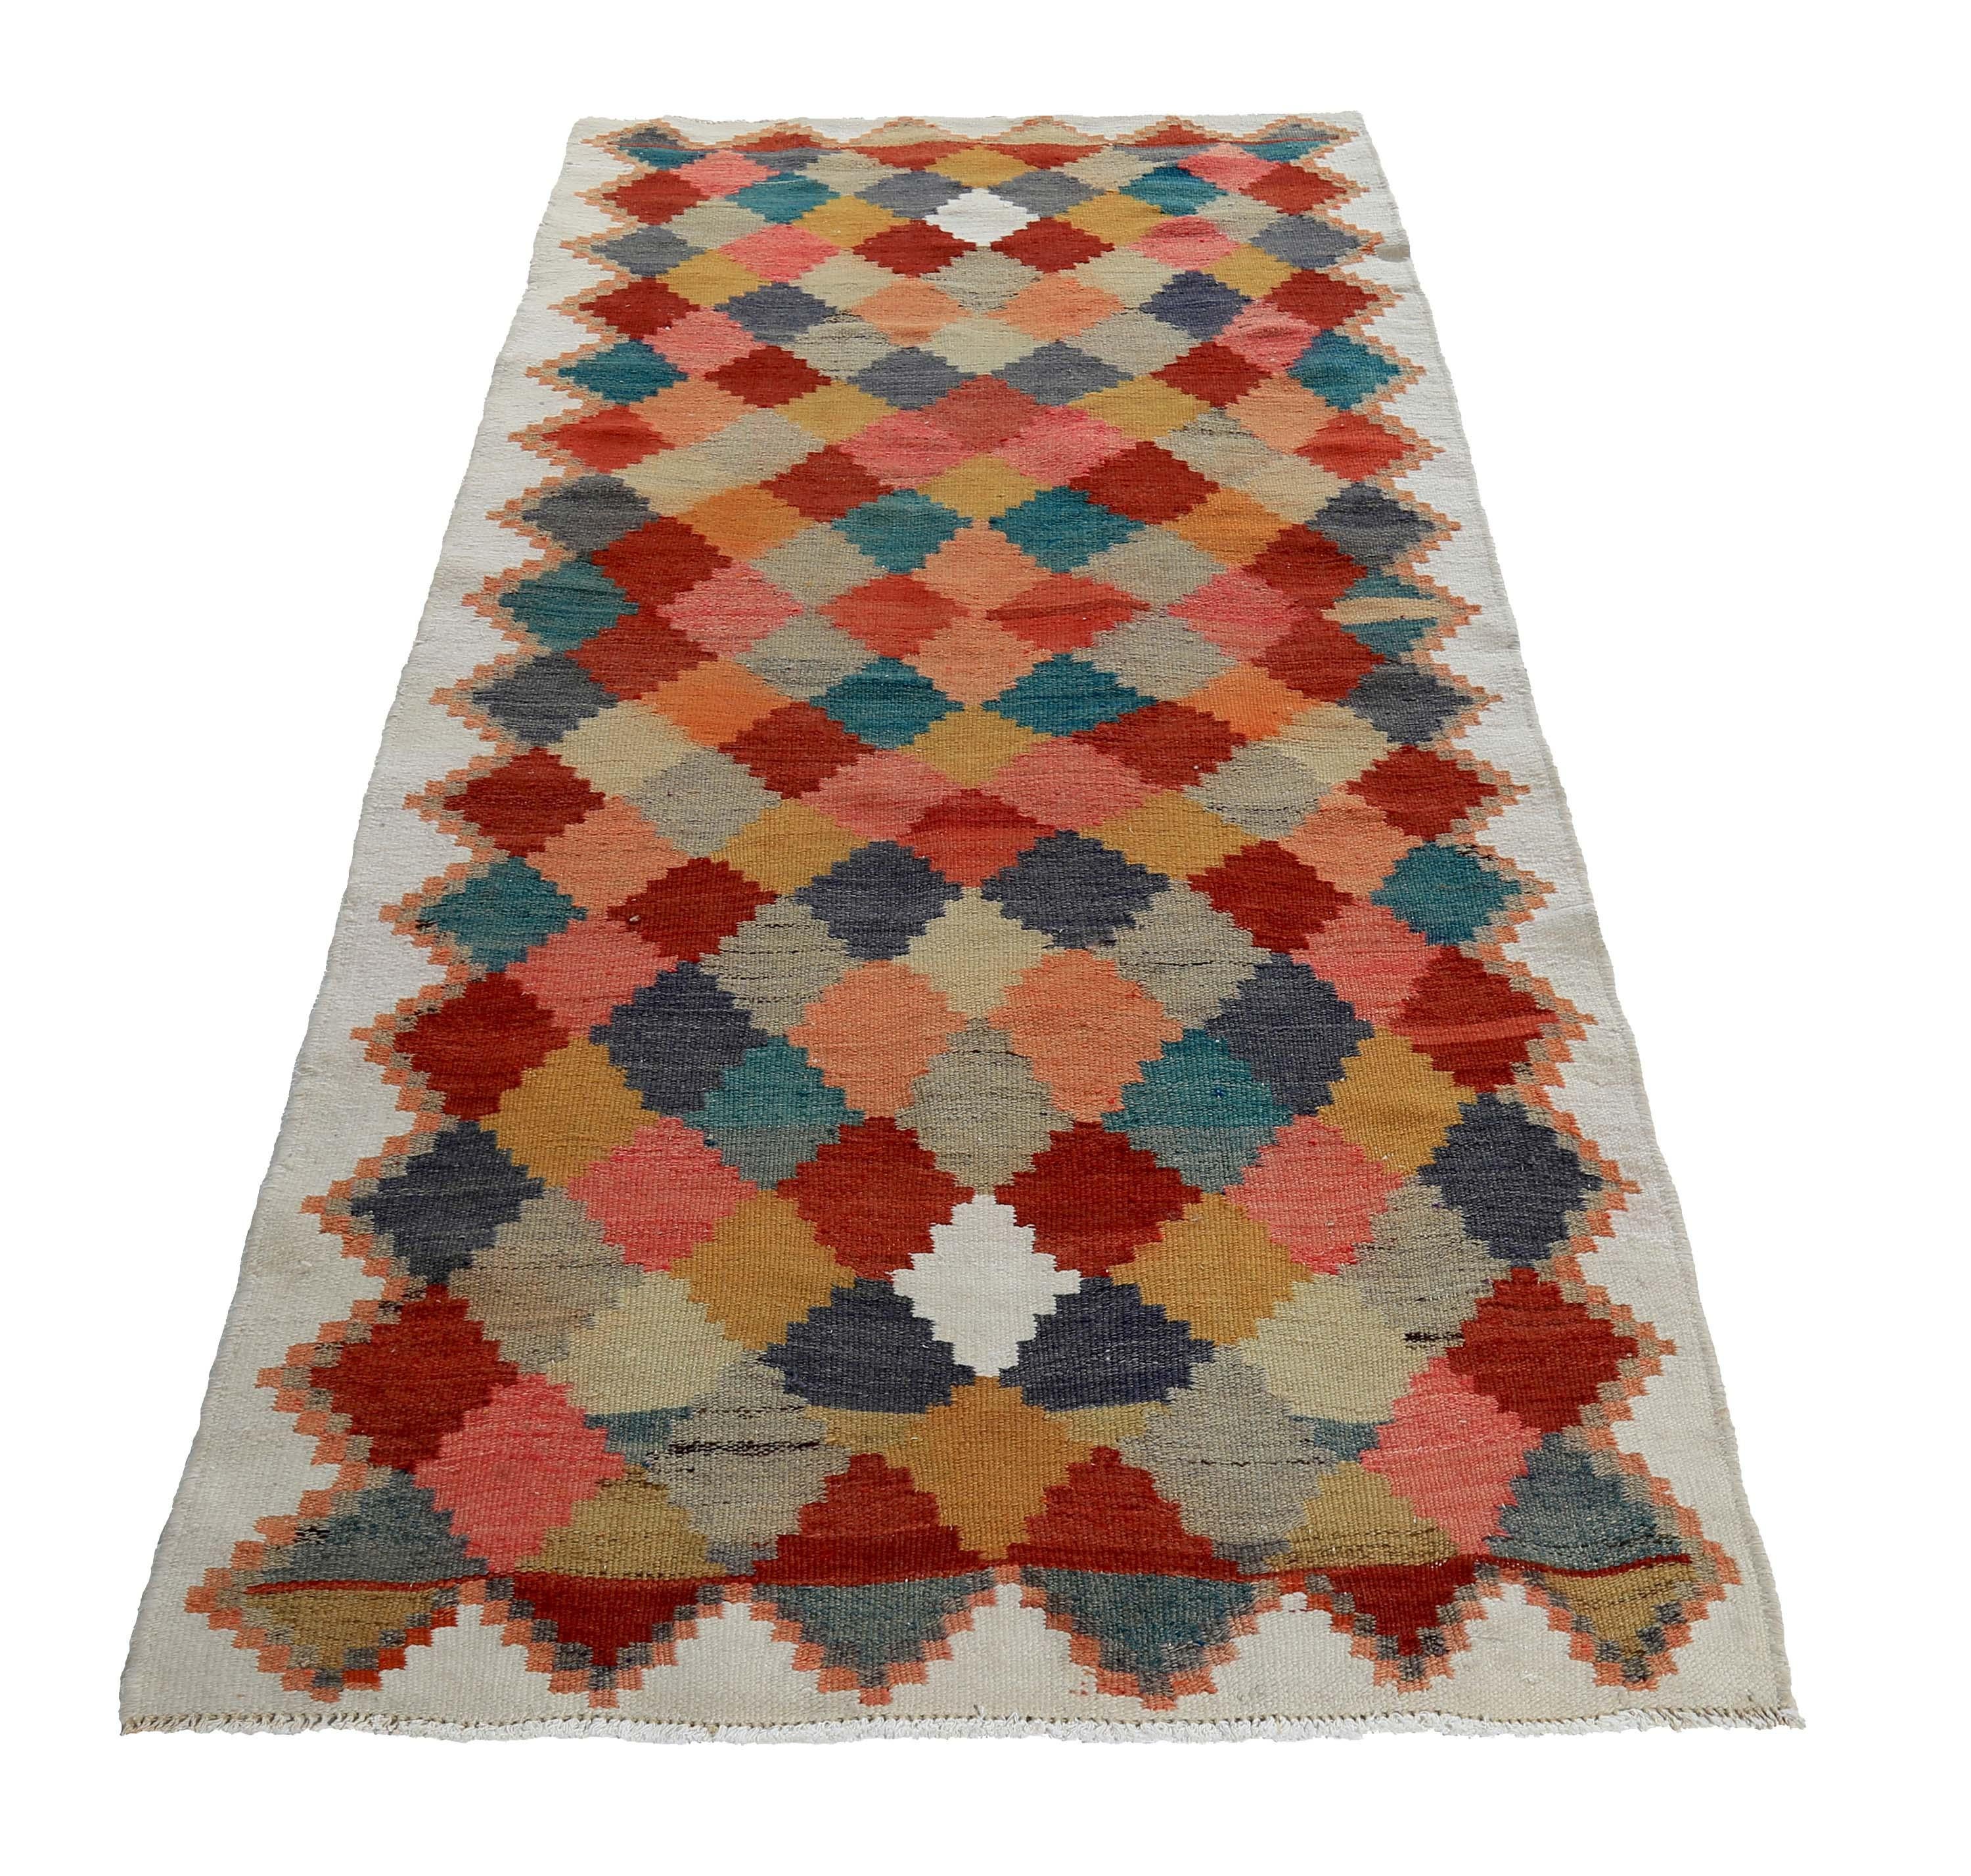 Türkischer Teppich, handgewebt aus feinster Schafwolle und gefärbt mit natürlichen pflanzlichen Farbstoffen, die für Menschen und Haustiere sicher sind. Es handelt sich um ein traditionelles Kelim-Flachgewebe mit rosa, roten und blauen Rautenmustern